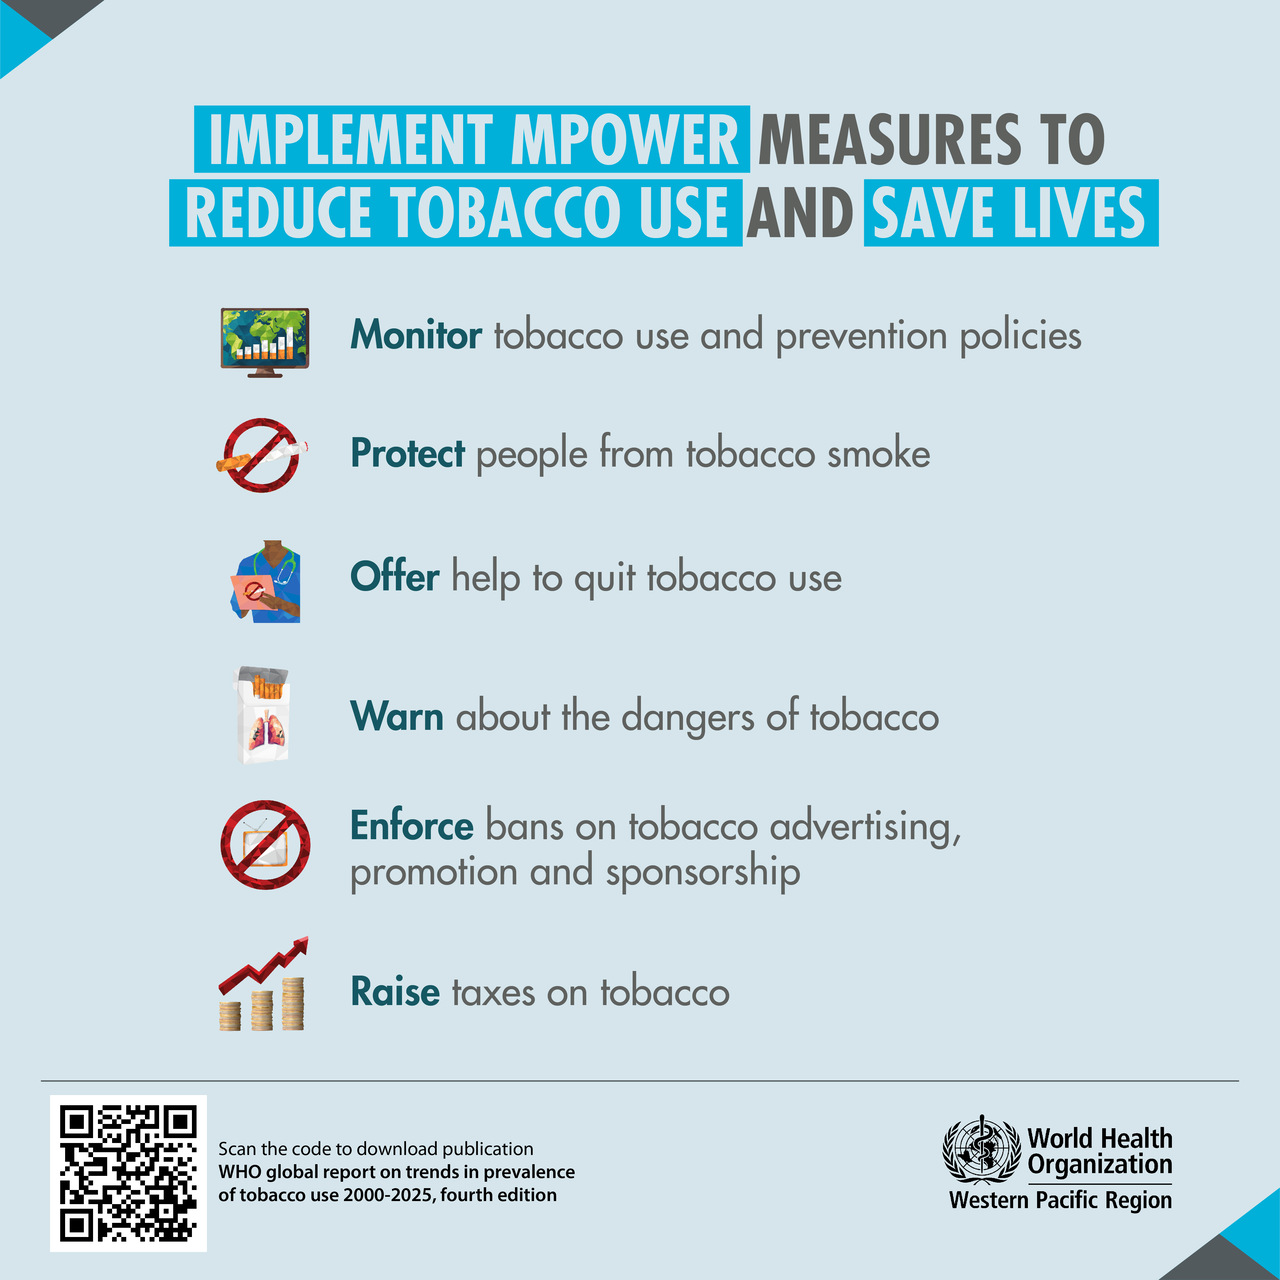 Thuốc lá: hút thuốc vẫn đang đầu độc hành tinh của chúng ta, nhưng các biện pháp toàn cầu để chống lại hiện tượng này đang có hiệu quả